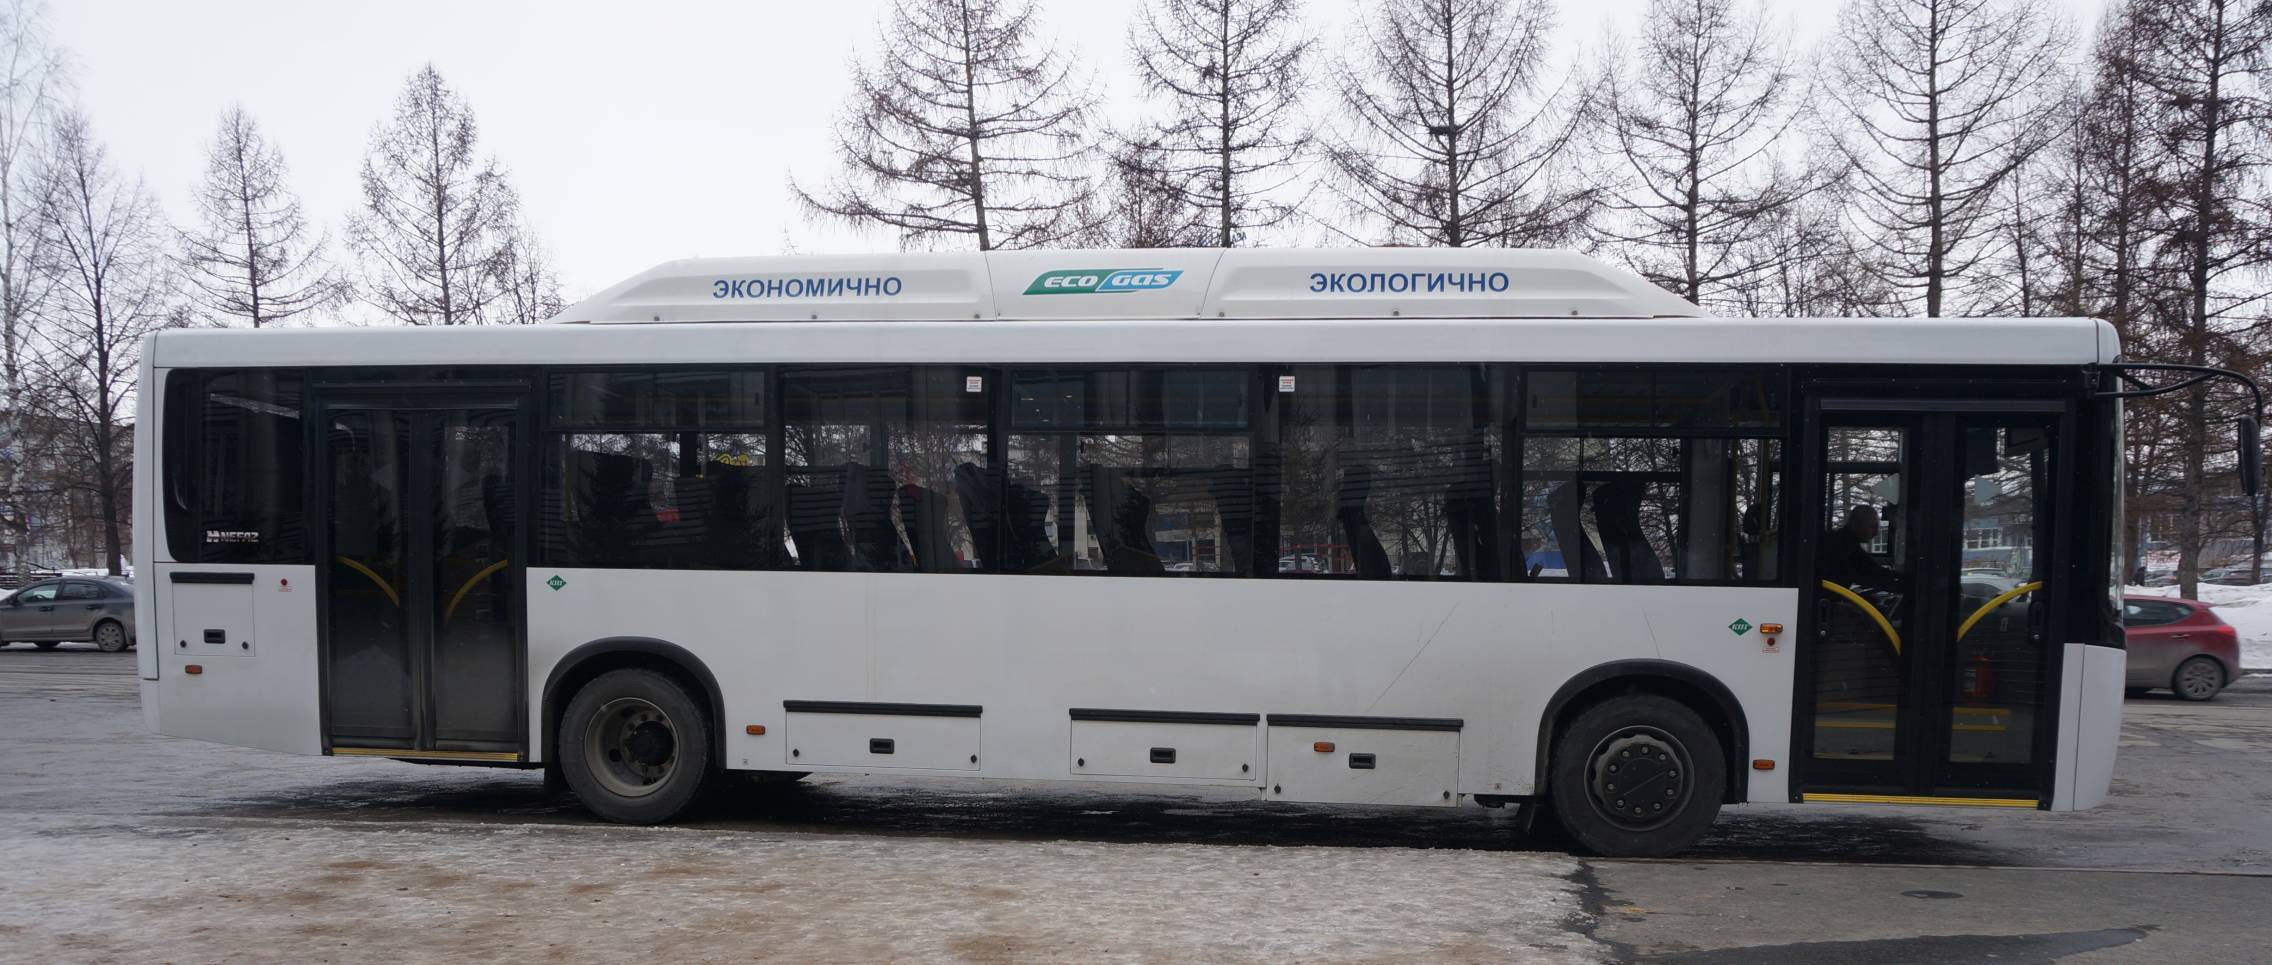 УК «Кузбассразрезуголь» присоединилась к всероссийской программе газификации пассажирского транспорта